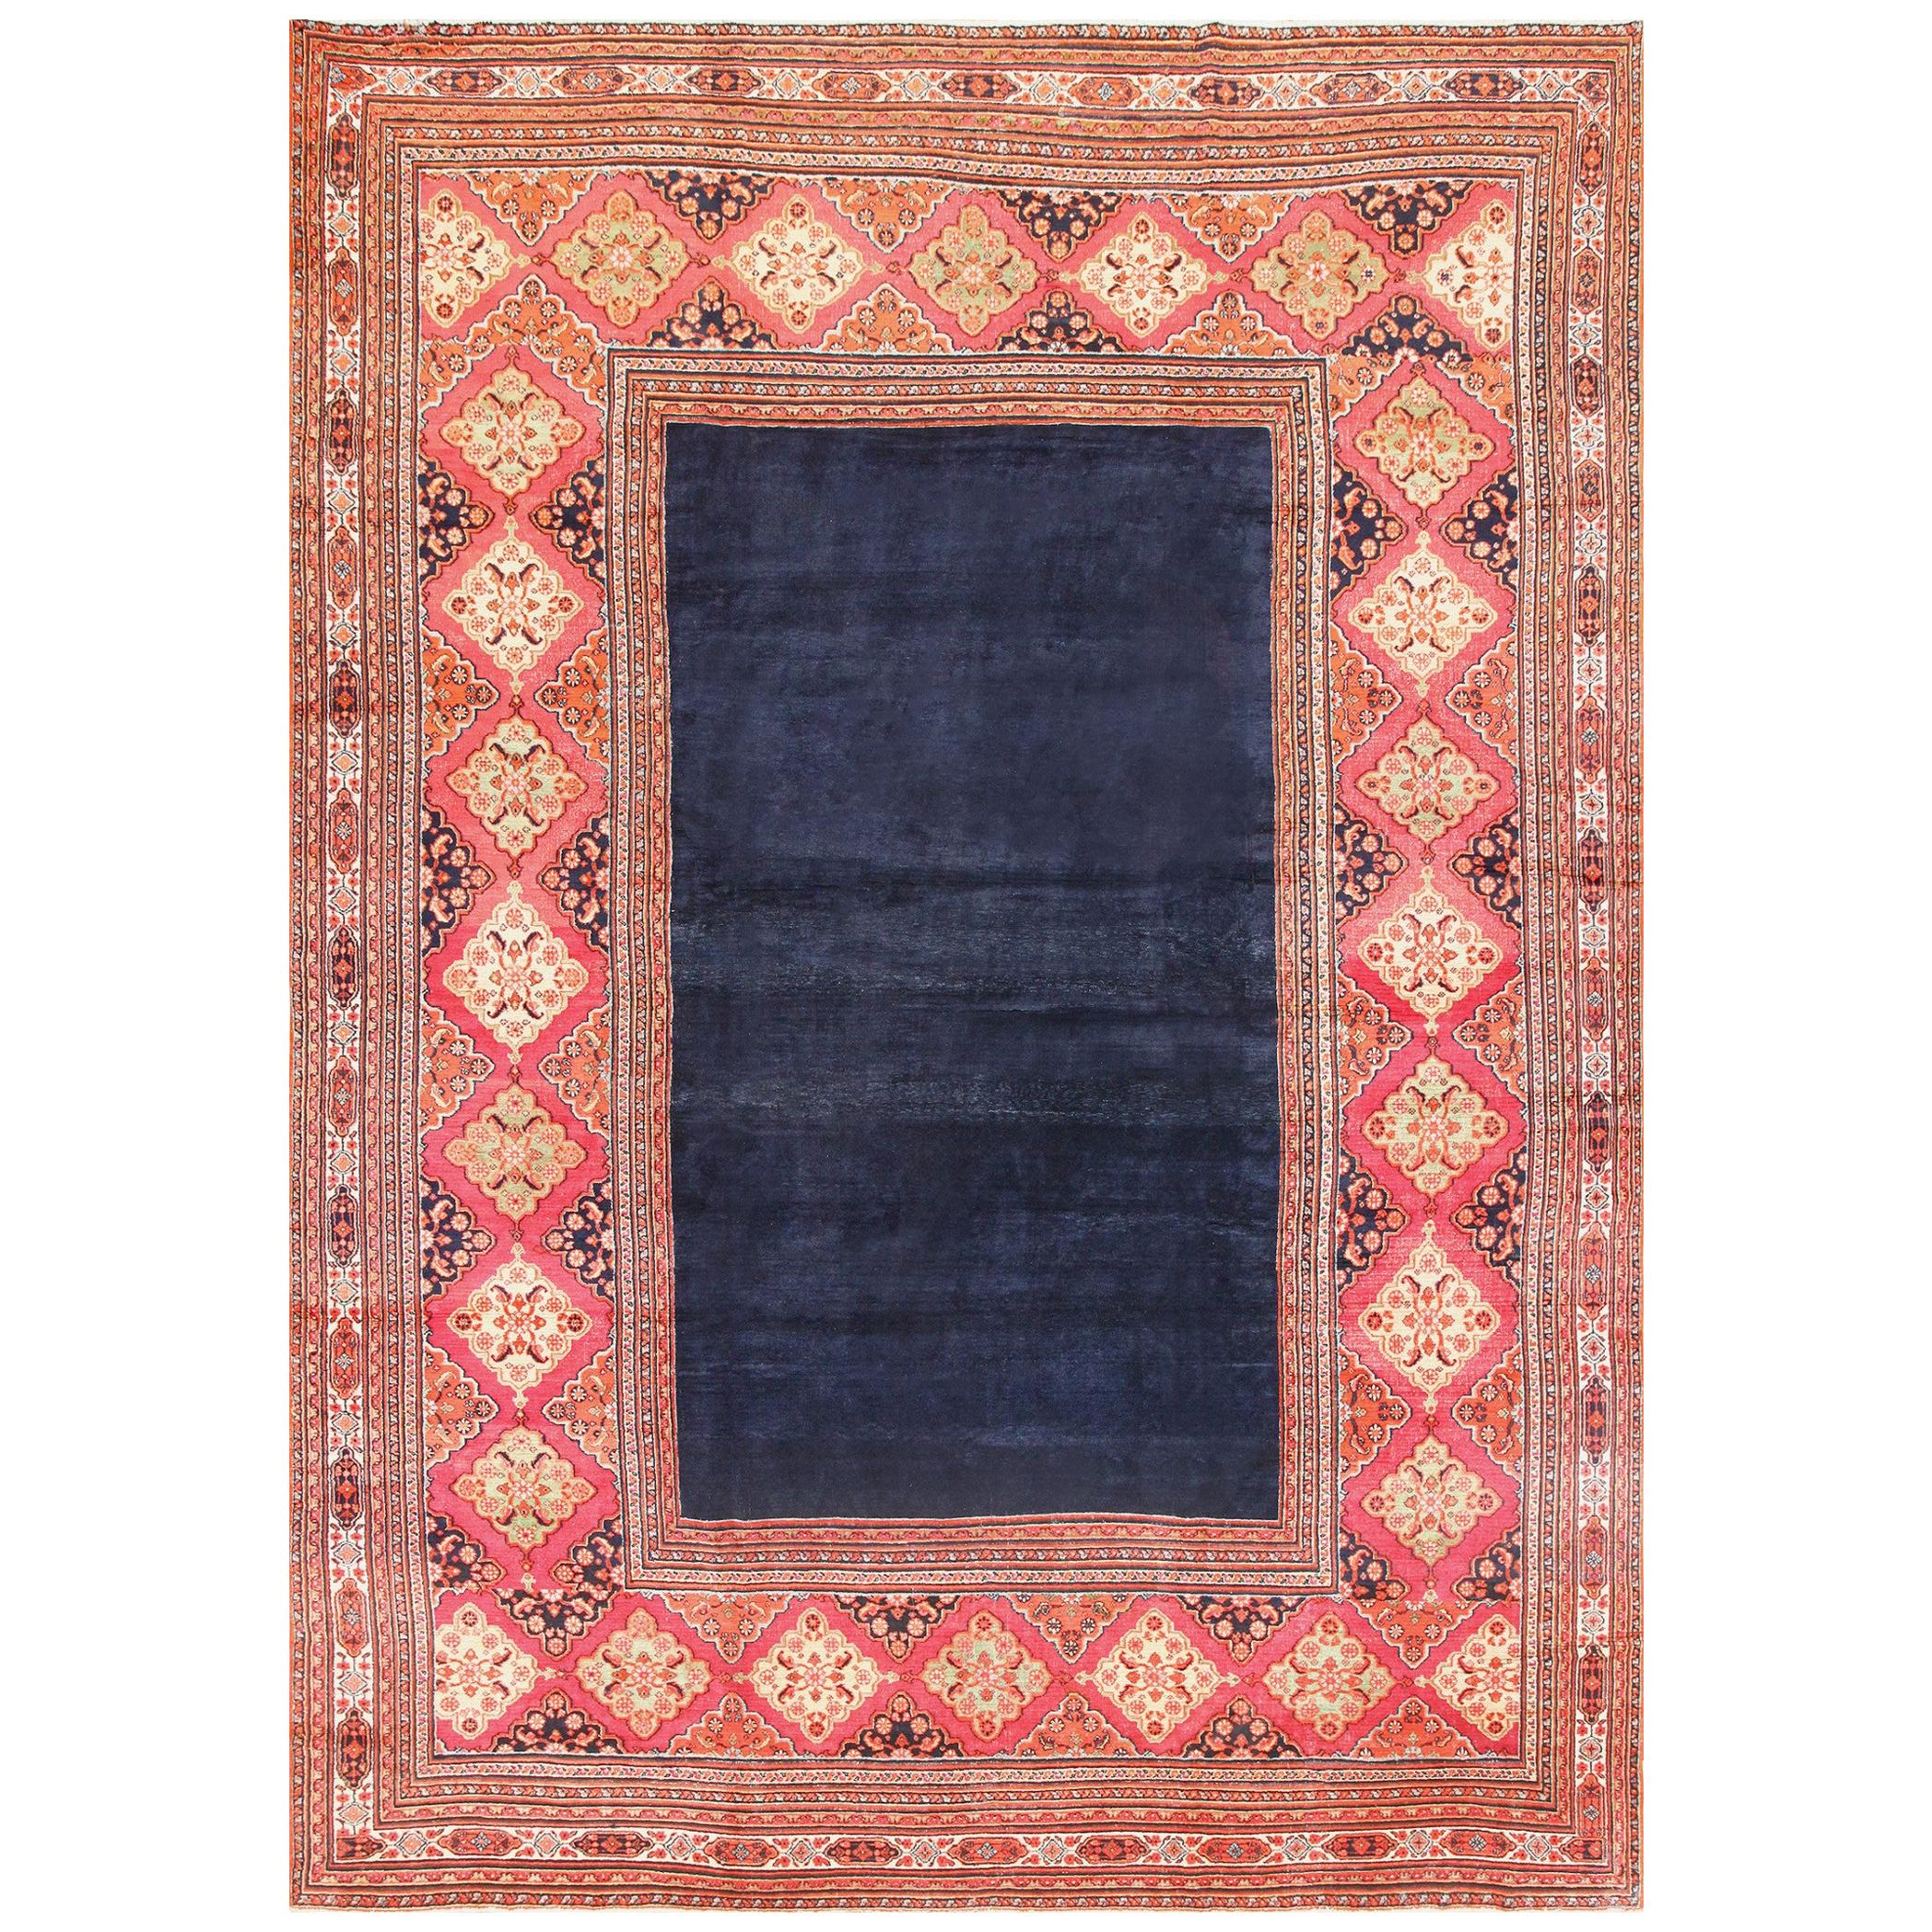 Antique Persian Khorassan Carpet. Size: 11' 9" x 16' 3" For Sale